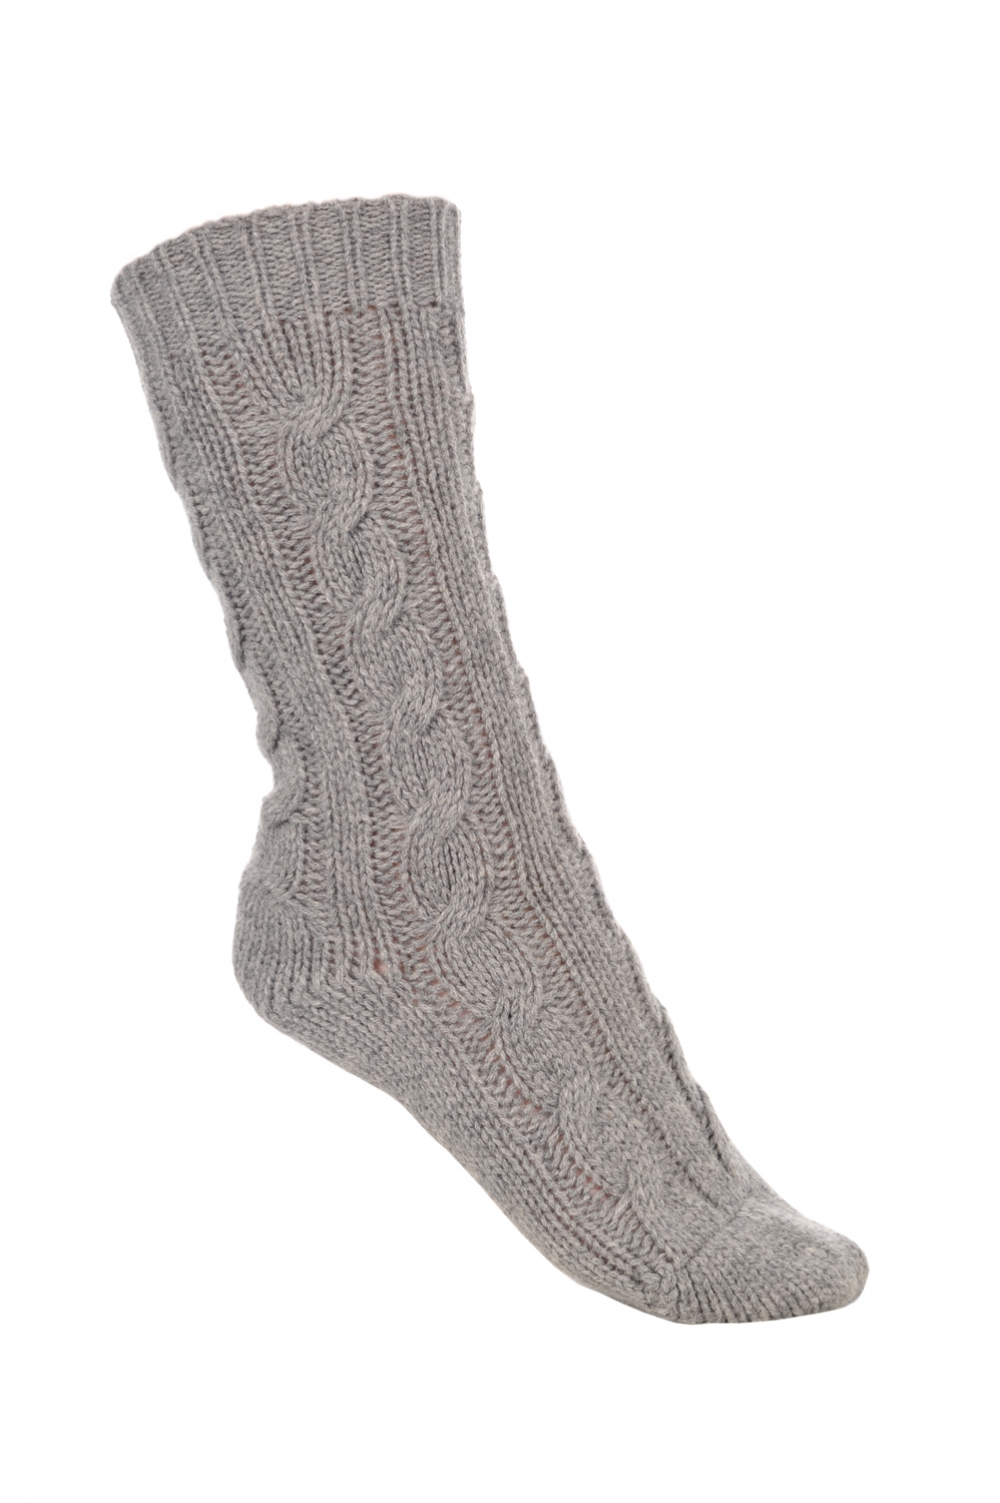 Cachemire accessoires chaussettes pedibus gris chine 37 41